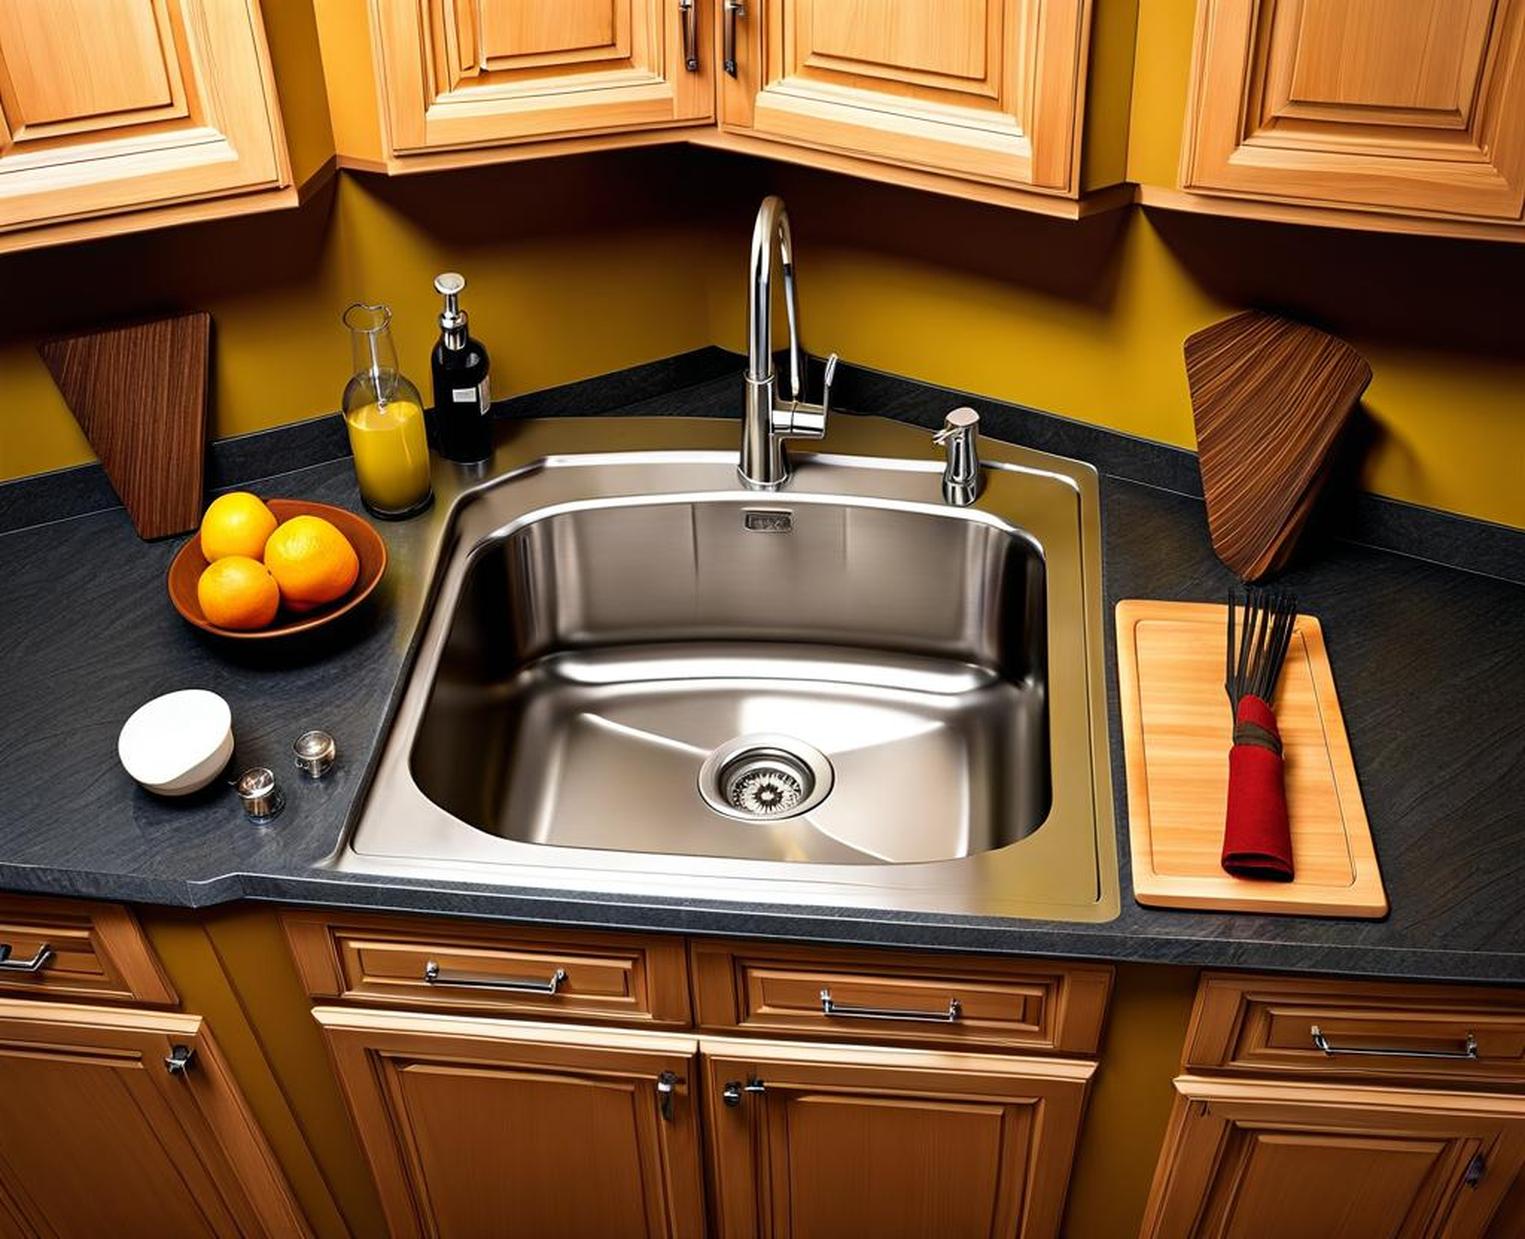 corner kitchen sink with drainboard